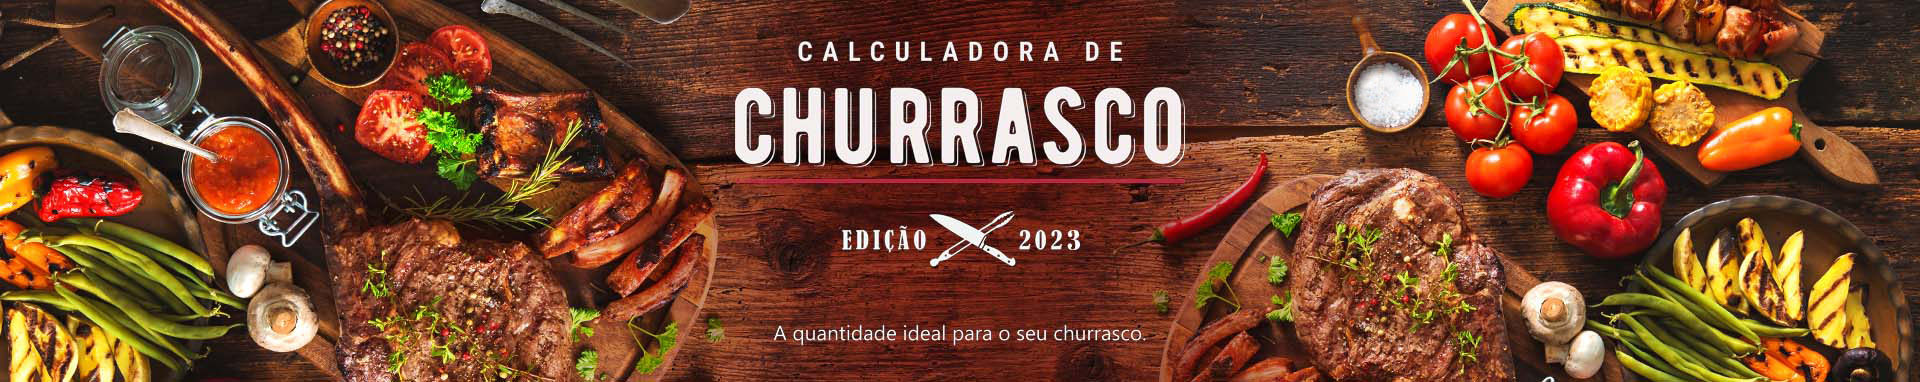 Calculadora de Churrasco